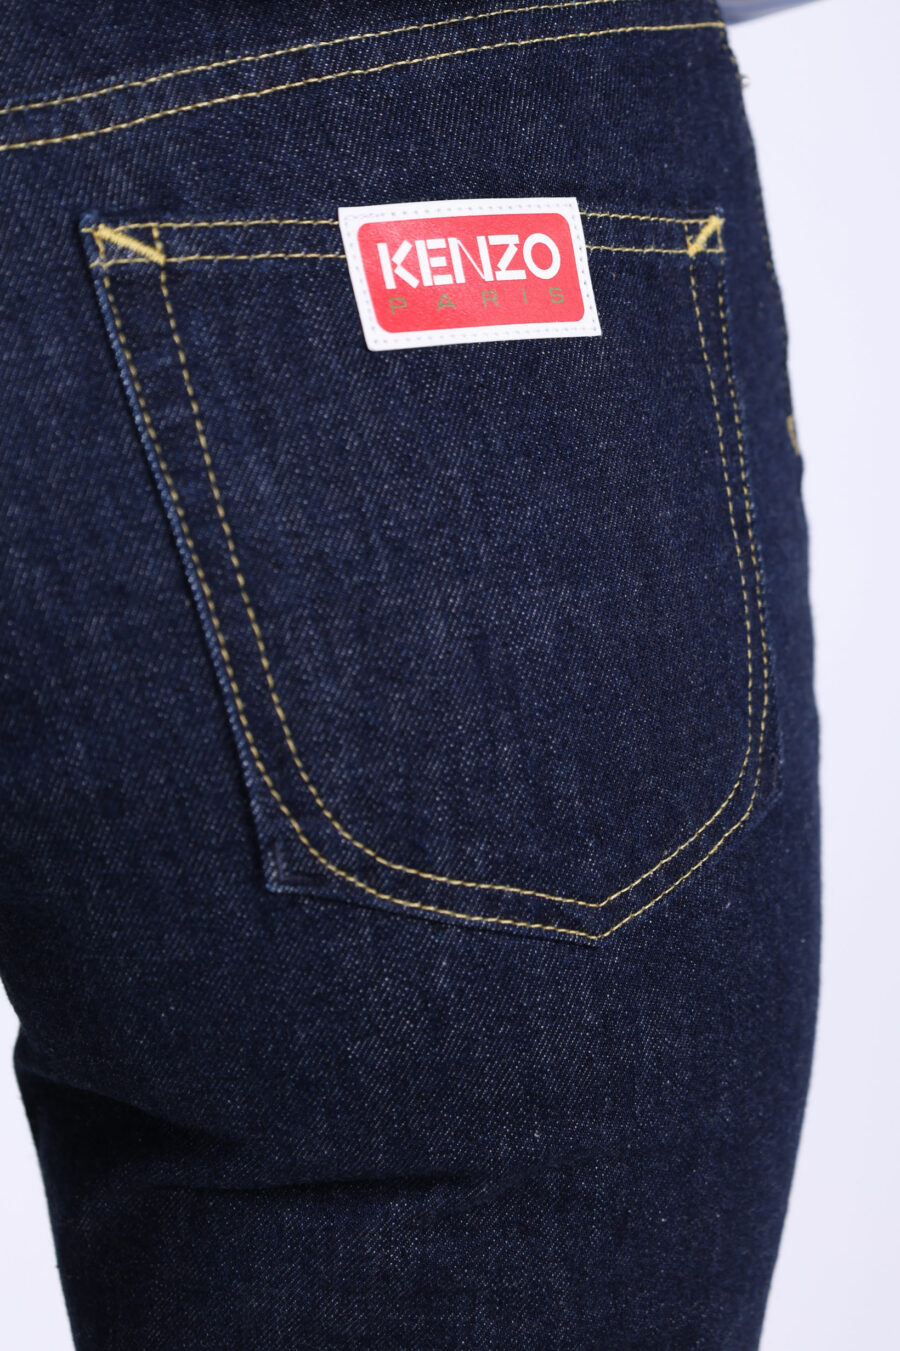 Pantalón vaquero azul oscuro recto con minilogo "kenzo paris" - 361223054662201716